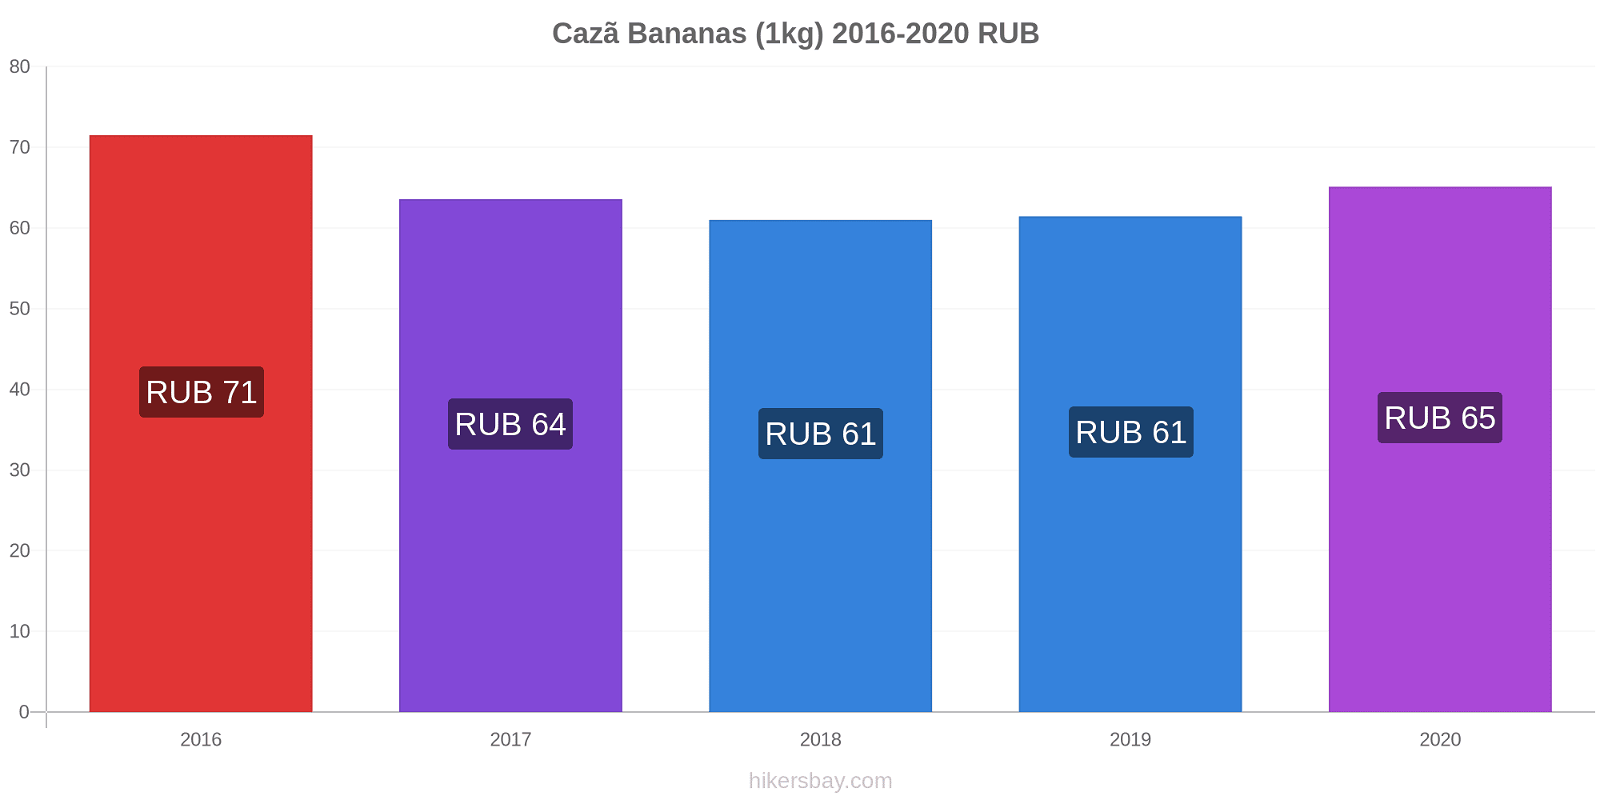 Cazã variação de preço Banana (1kg) hikersbay.com